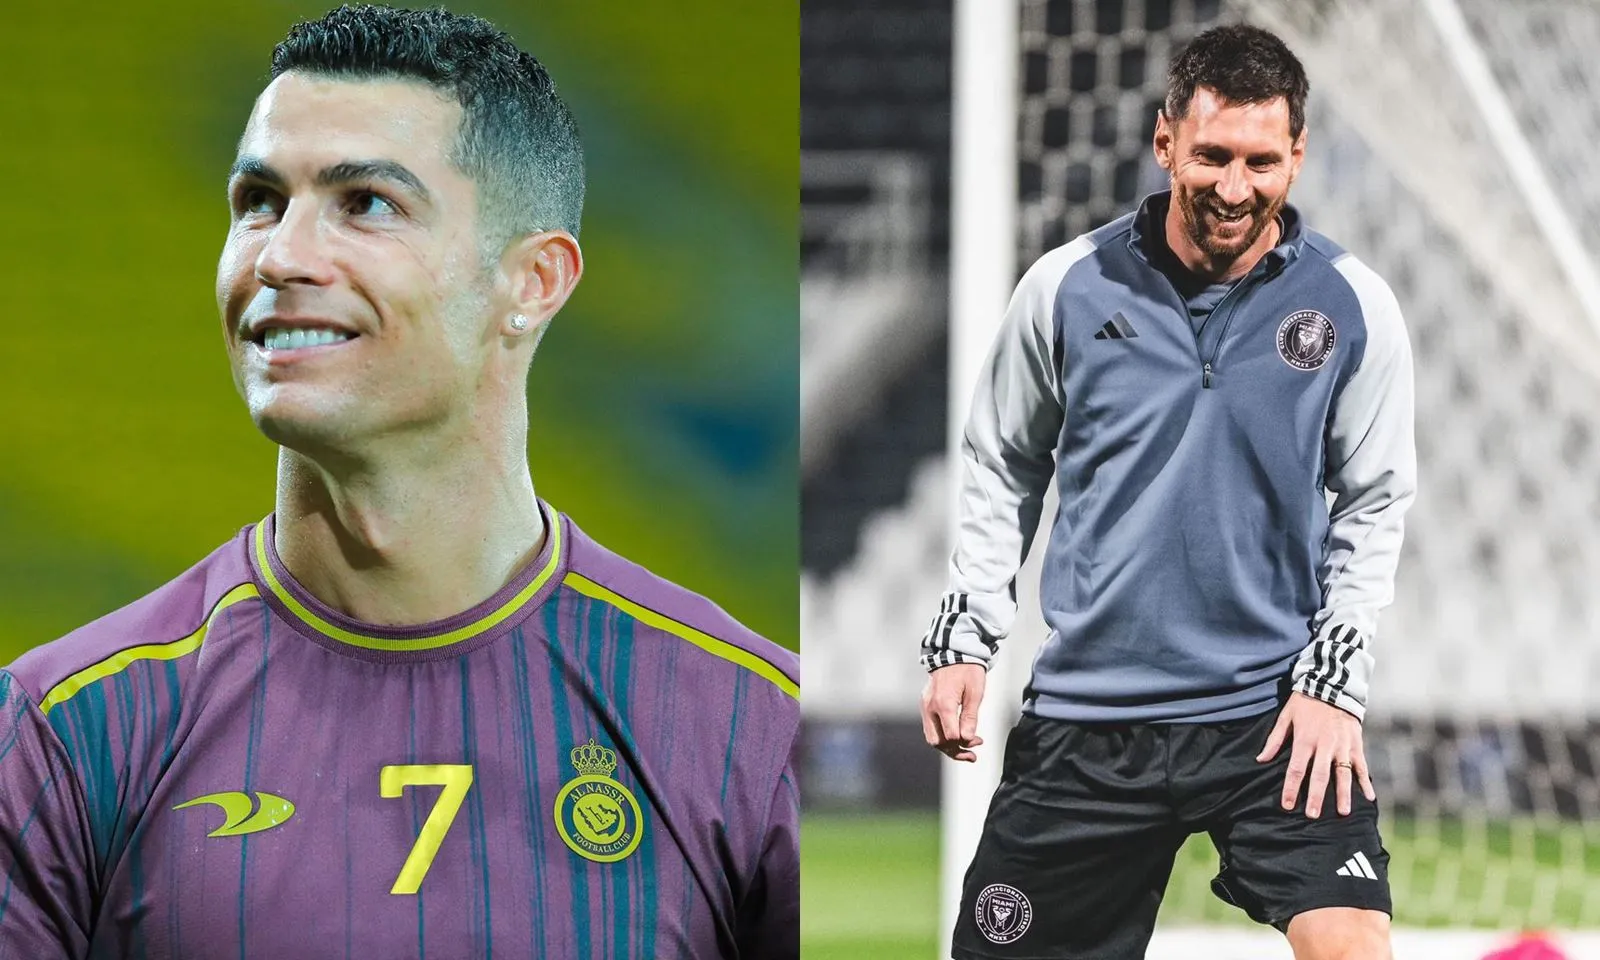 Chưa hồi phục gặp chấn thương, Ronaldo nguy cơ tiềm ẩn lỡ hứa hẹn cuộc chiến với Messi